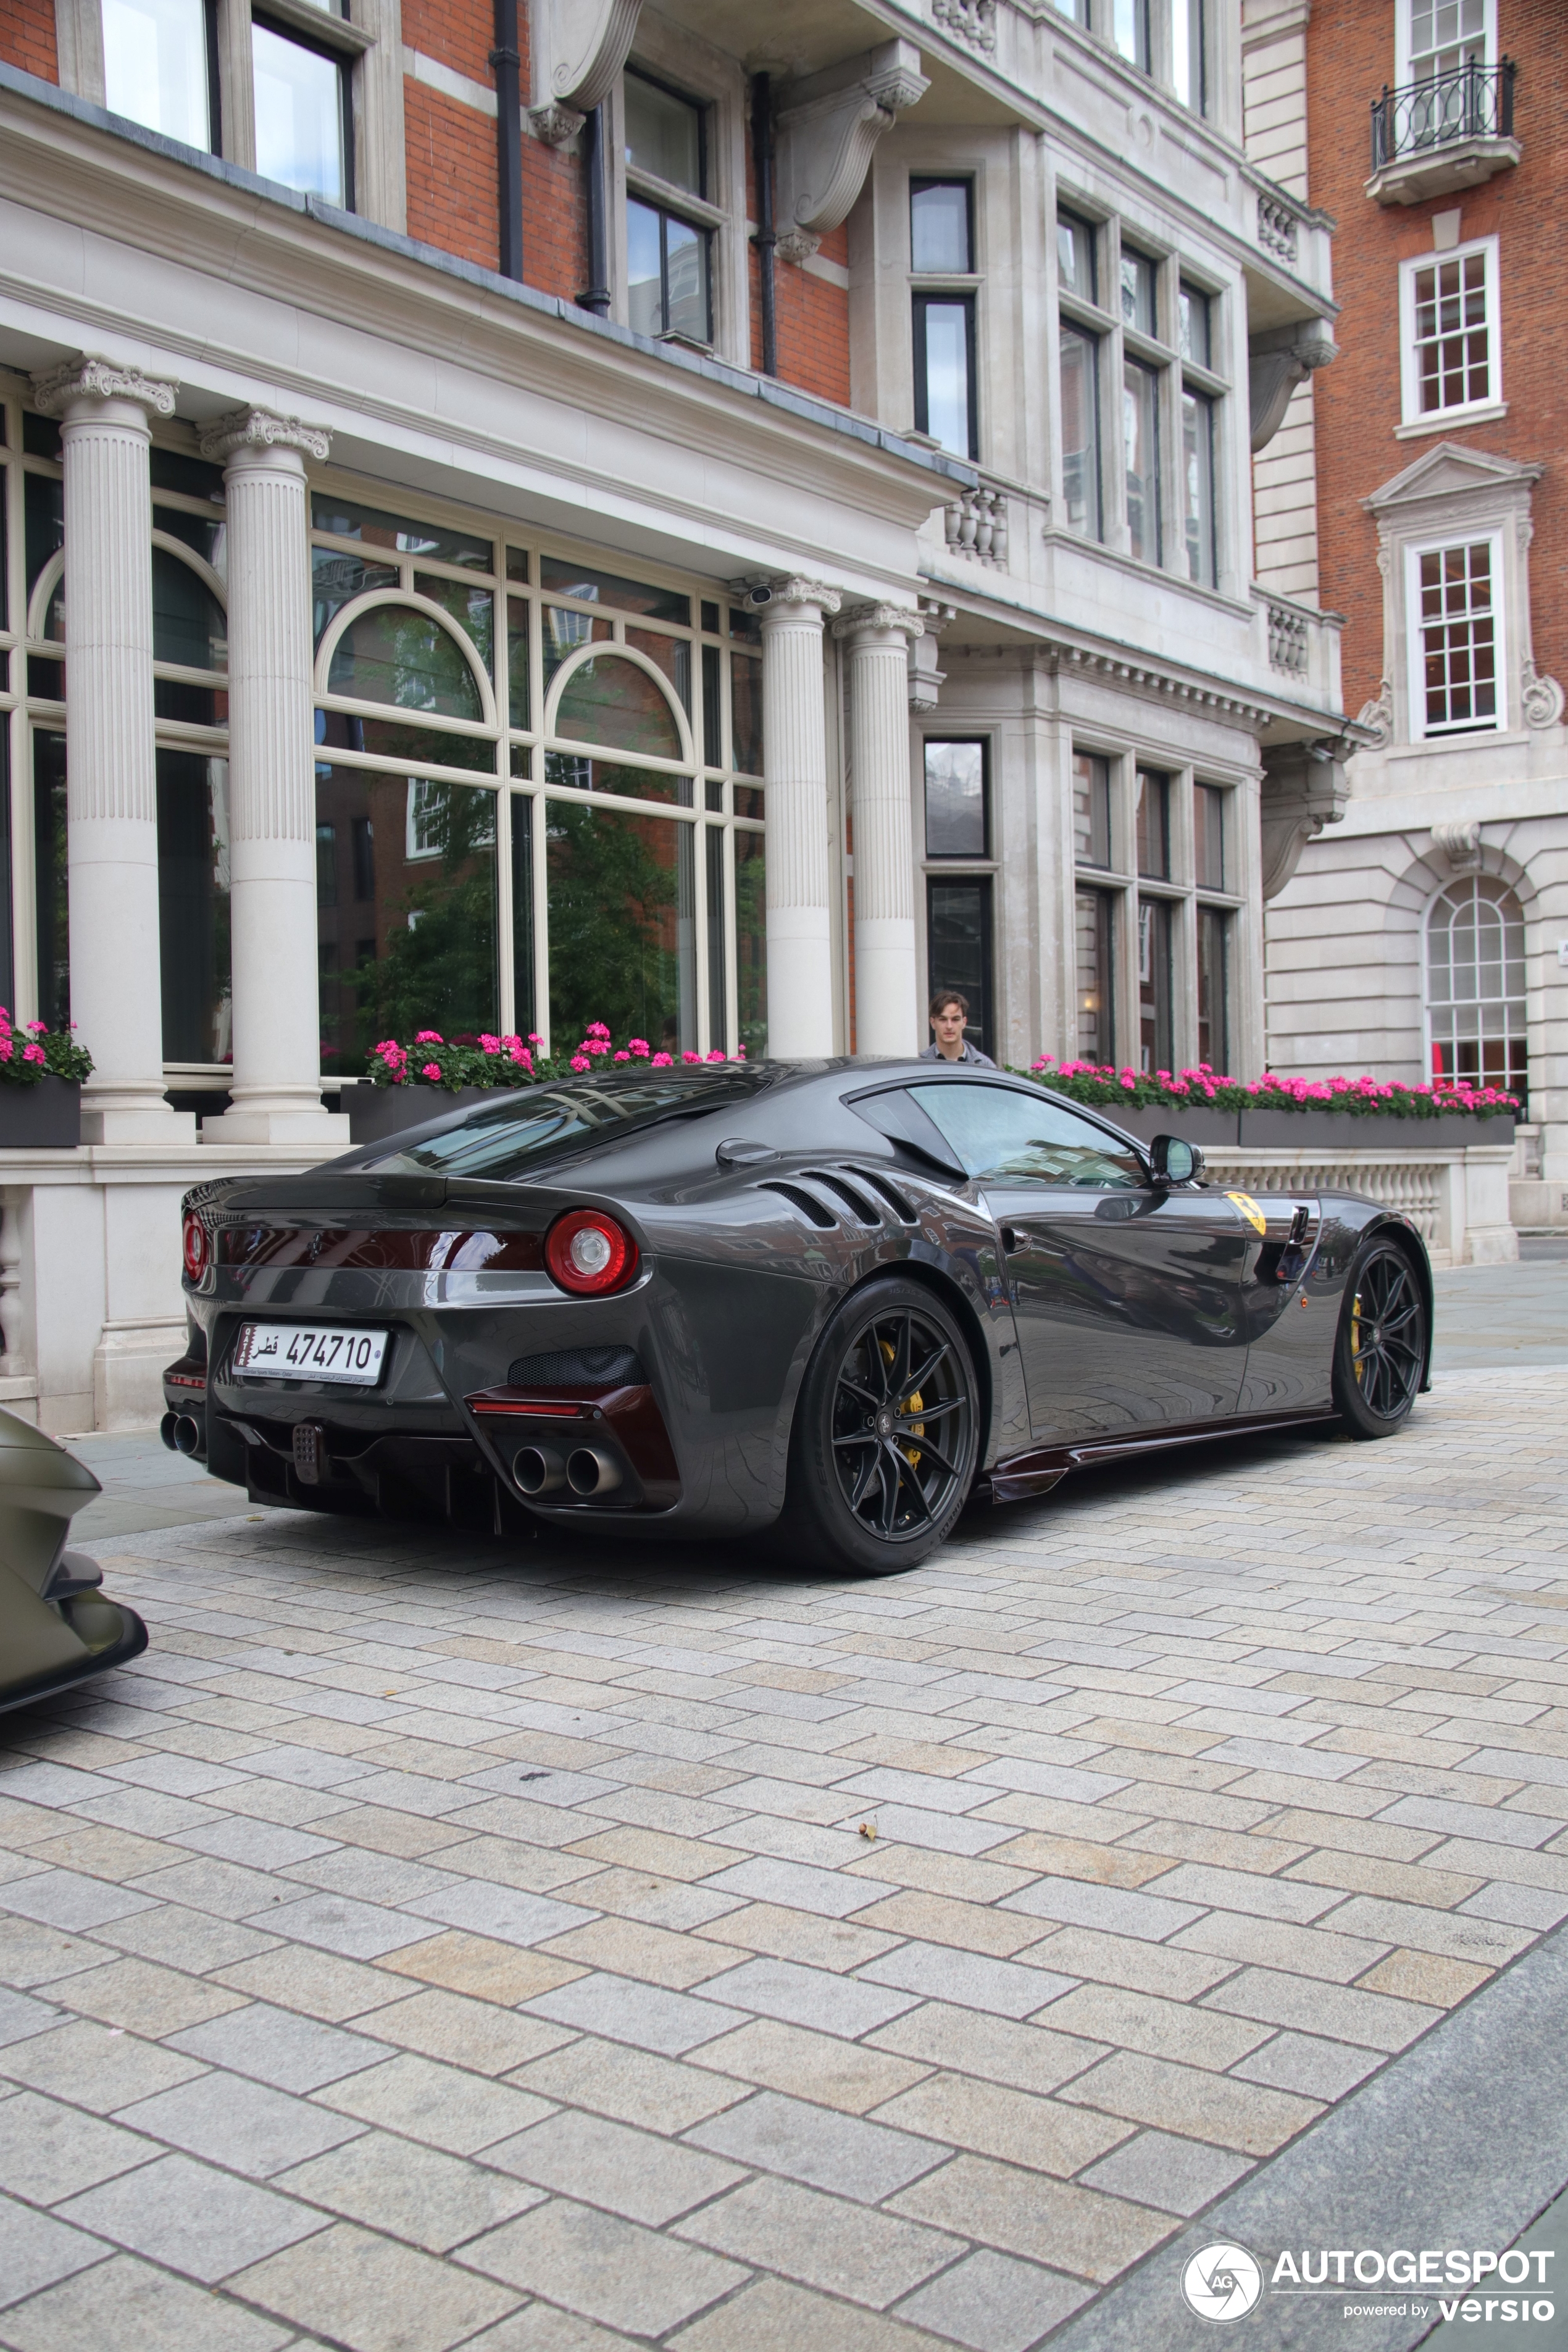 Prelep i podjednako poseban Ferrari F12tdf pojavljuje se u Londonu